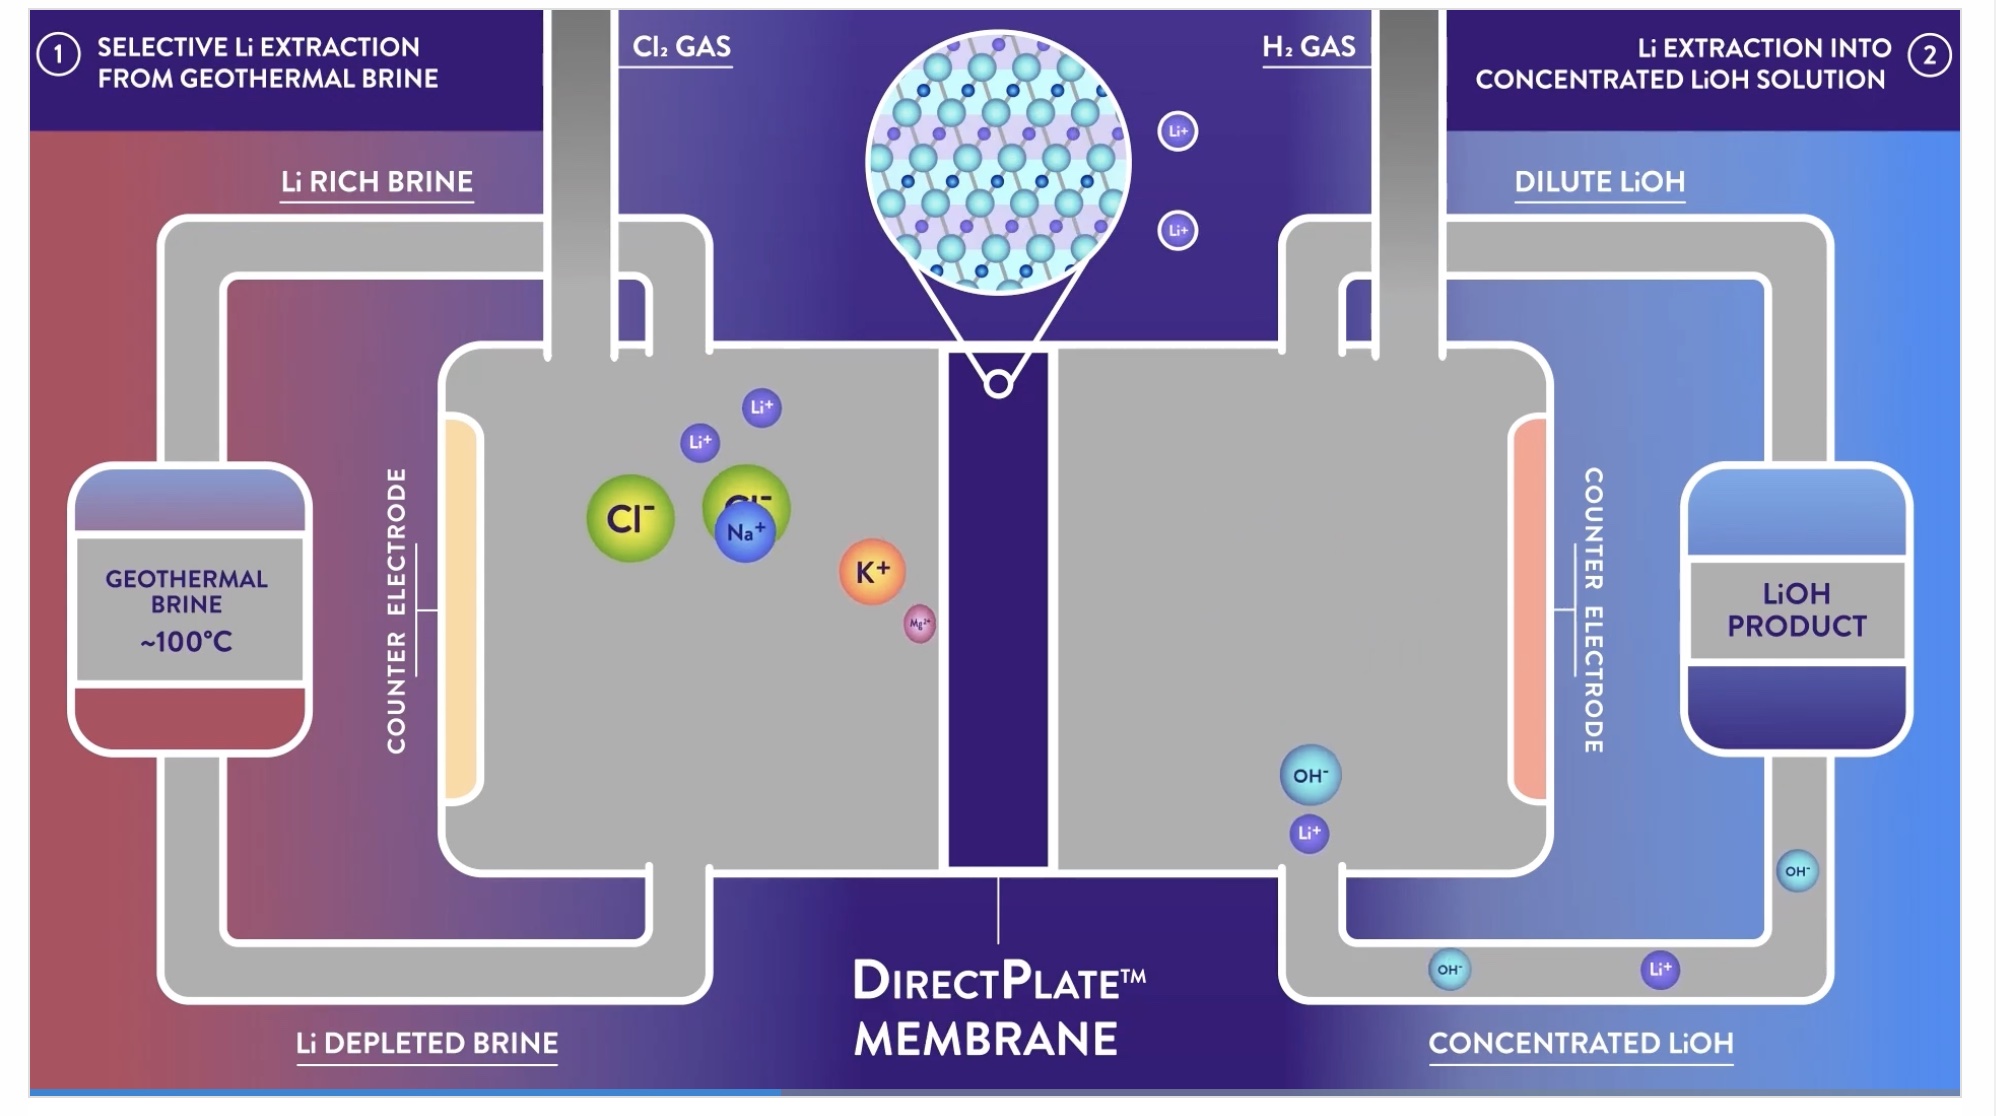 DirectPlate Membrane